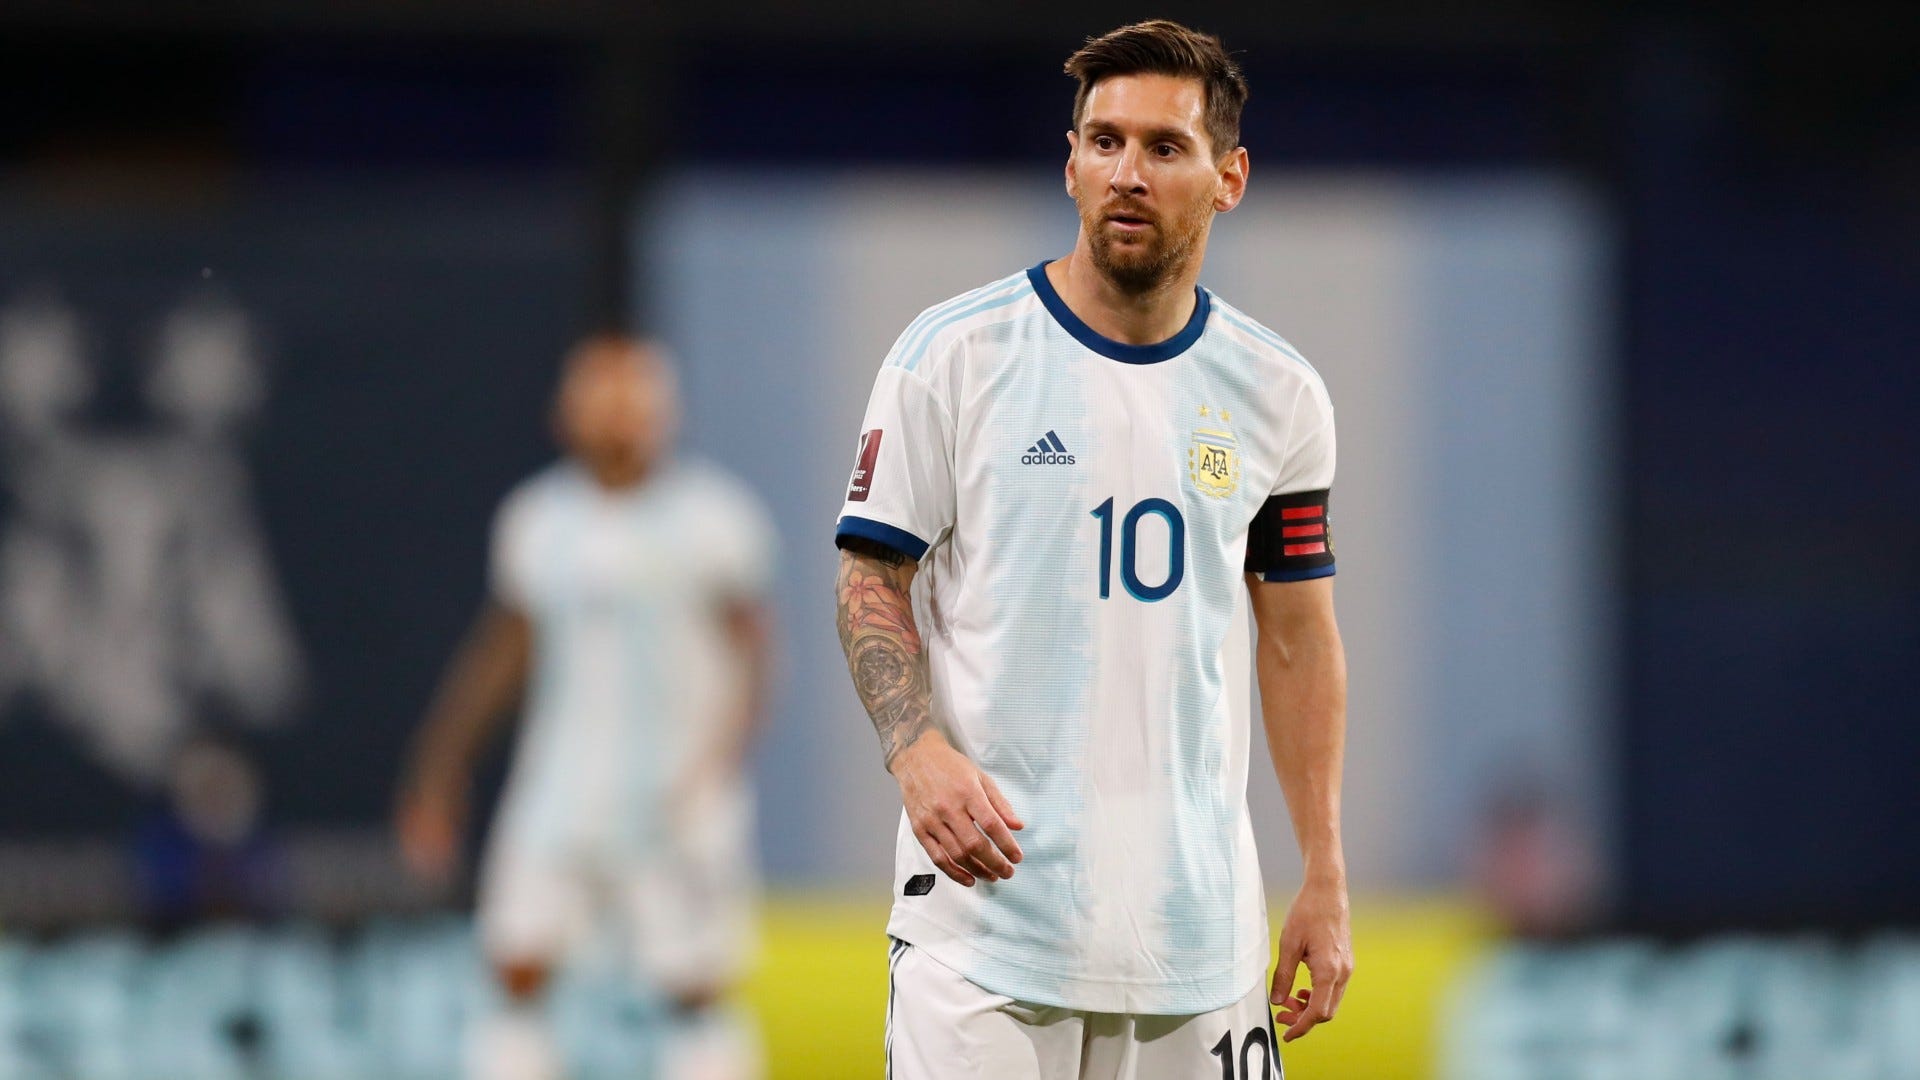 Messi: Siêu sao Lionel Messi là một trong những cầu thủ bóng đá hàng đầu thế giới. Hình ảnh của anh đầy năng lượng và tài năng sẽ khiến bạn không thể rời mắt khỏi những pha bóng đẳng cấp mà anh thể hiện trên sân cỏ.